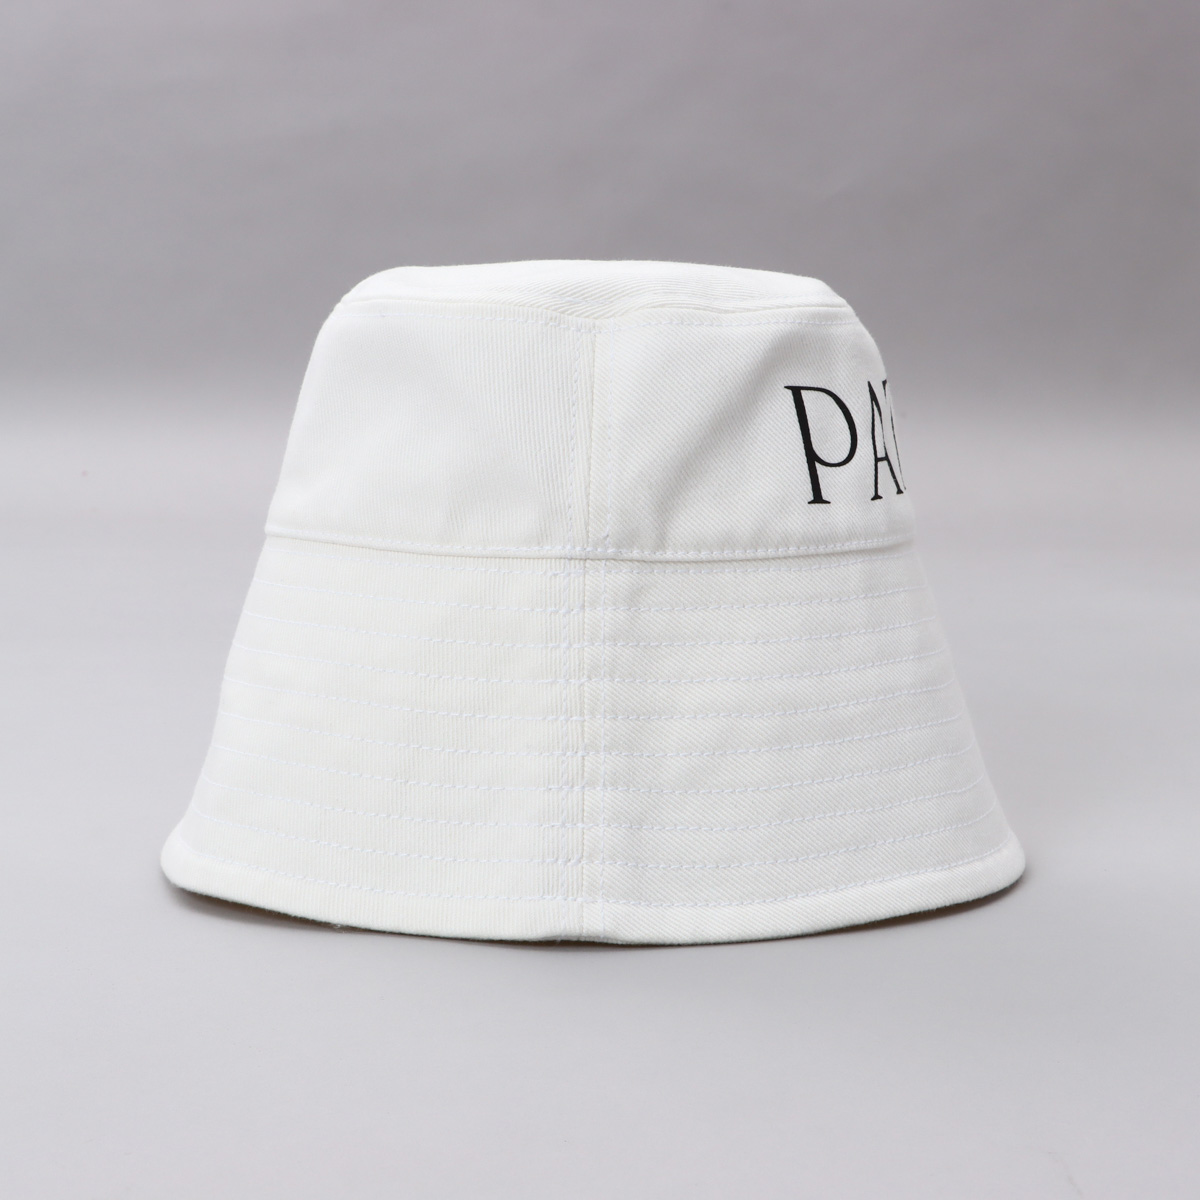 パトゥ PATOU バケットハット 帽子 ロゴ 刺繍 コットン AC027 HATS 